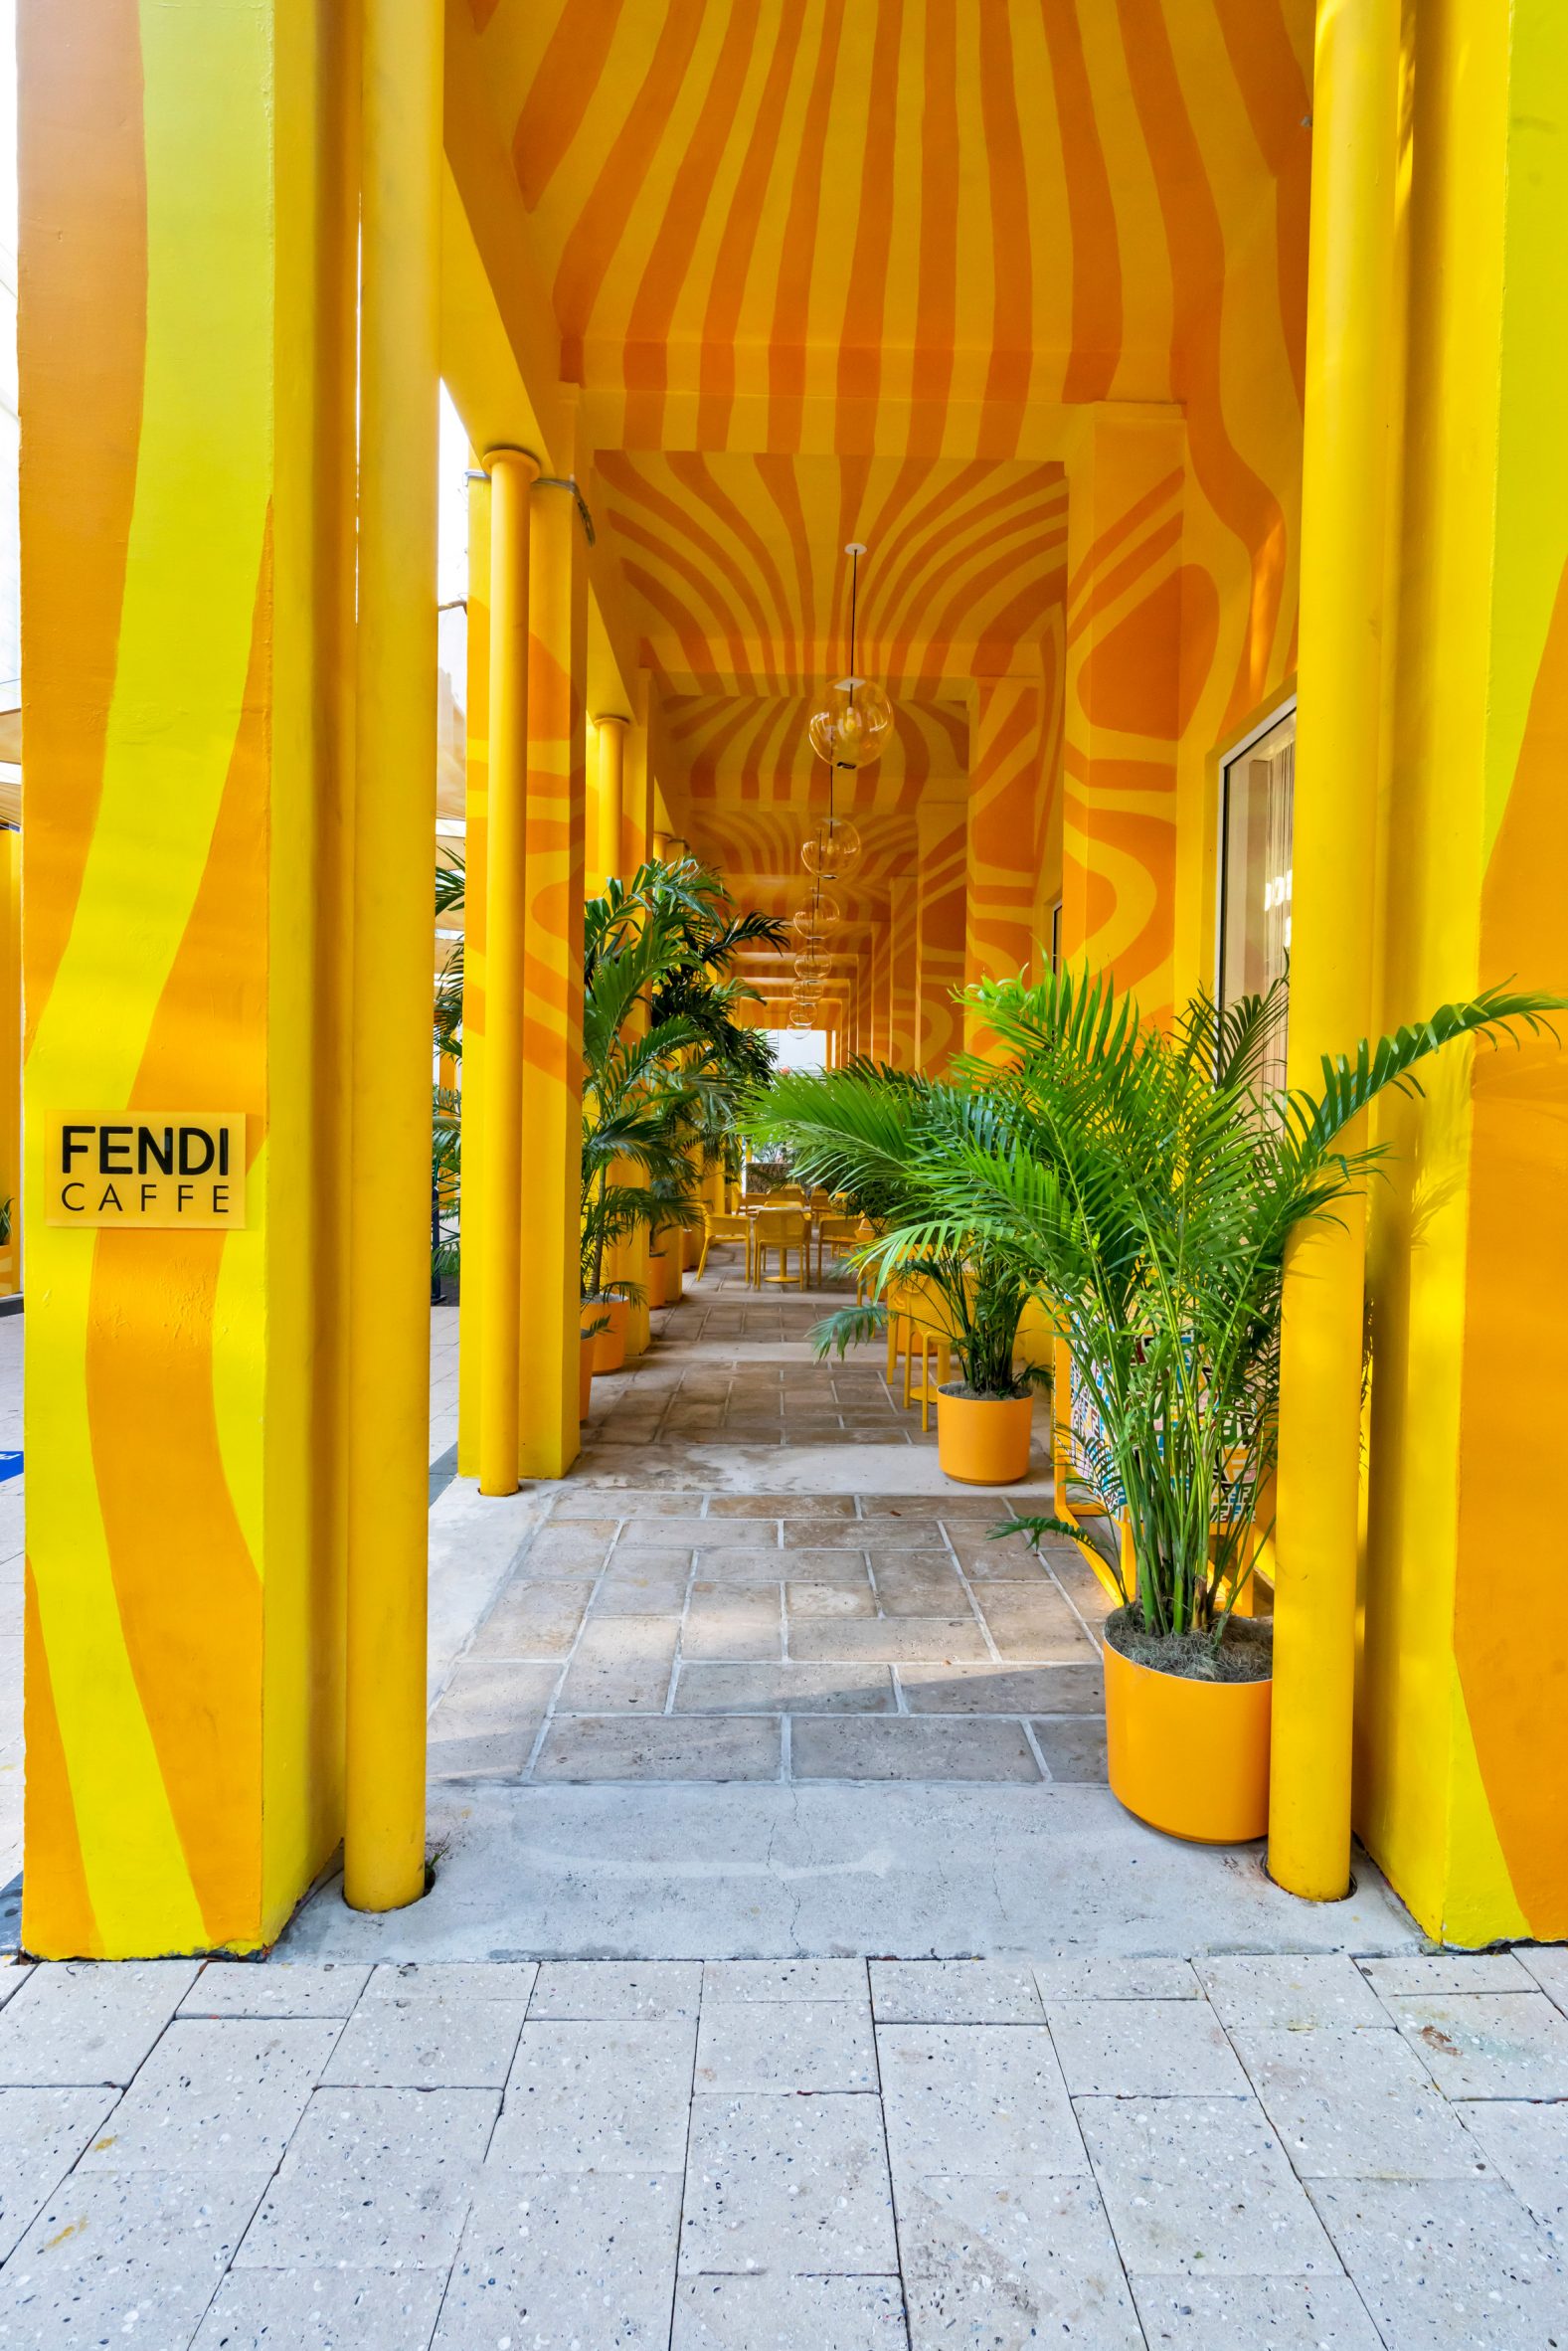 The Fendi Caffe was in Miami